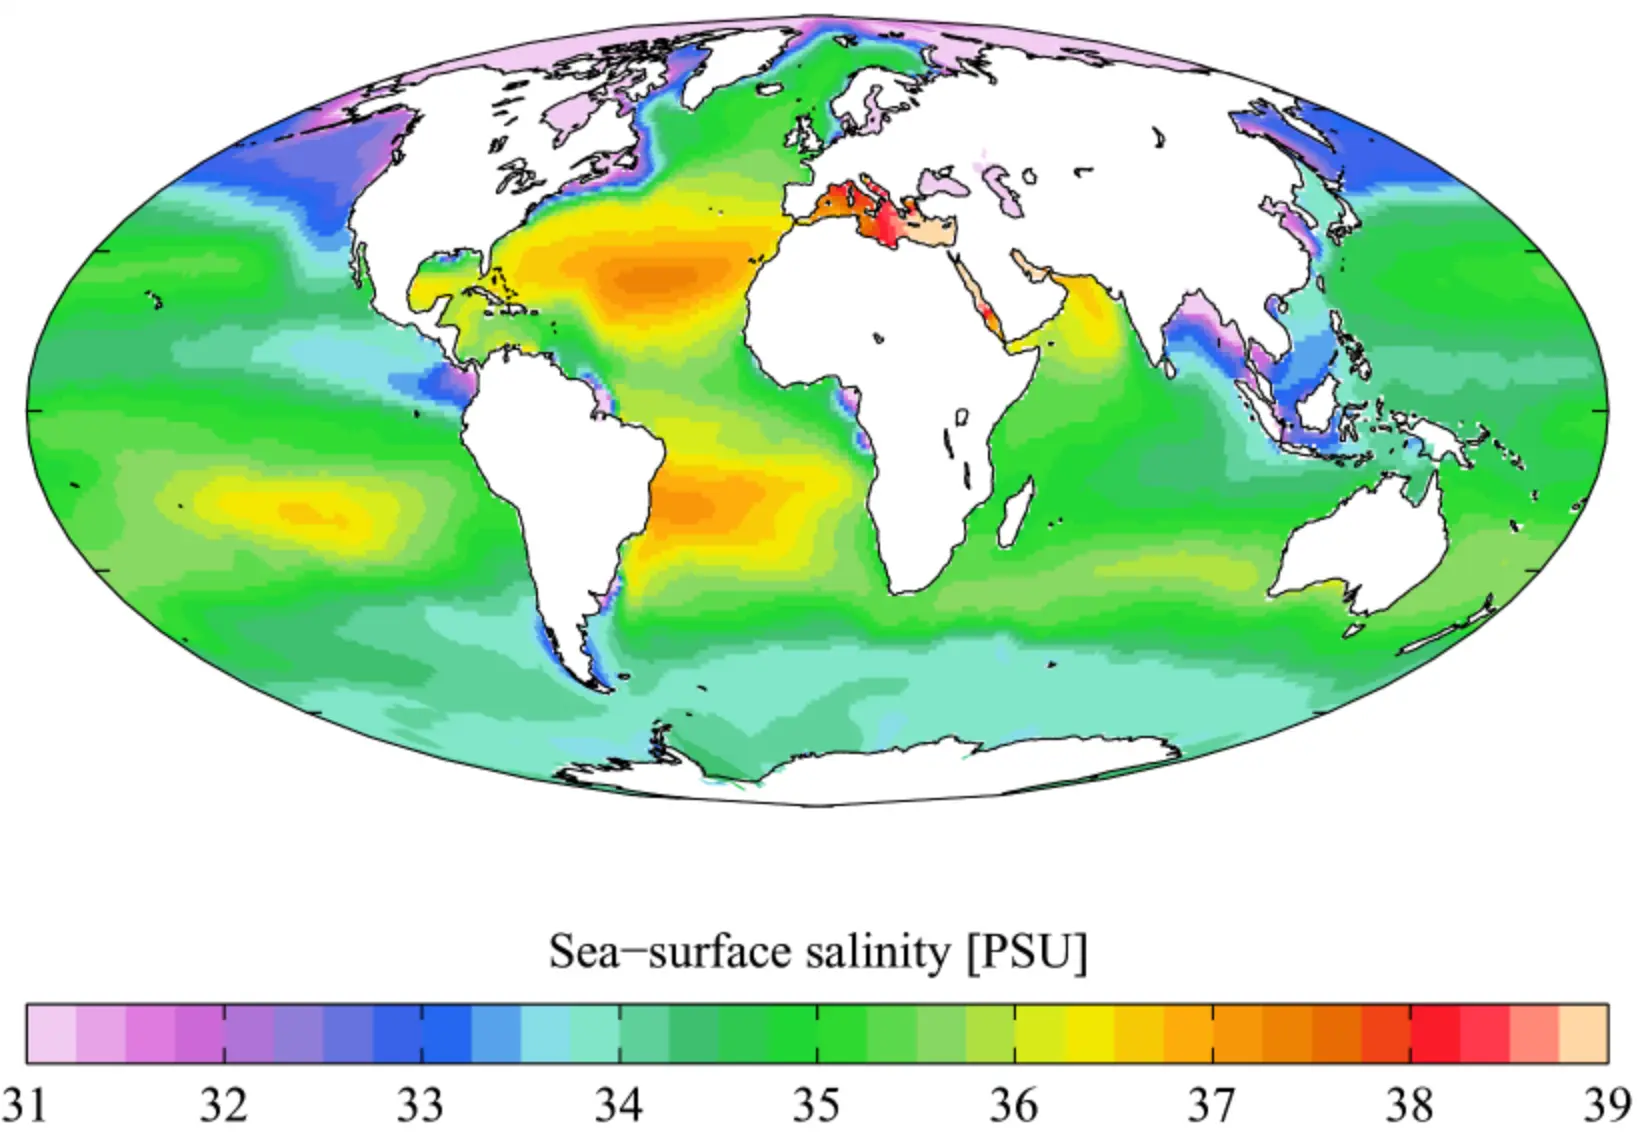 Peta di atas menggambarkan persebaran salinitas air laut di seluruh dunia. Dari peta tersebut diketahui Indonesia memiliki kadar garam yang tergolong rendah. Sekiranya faktor apa yang mempengaruhi rendahnya salinitas lautan di Indonesia?
